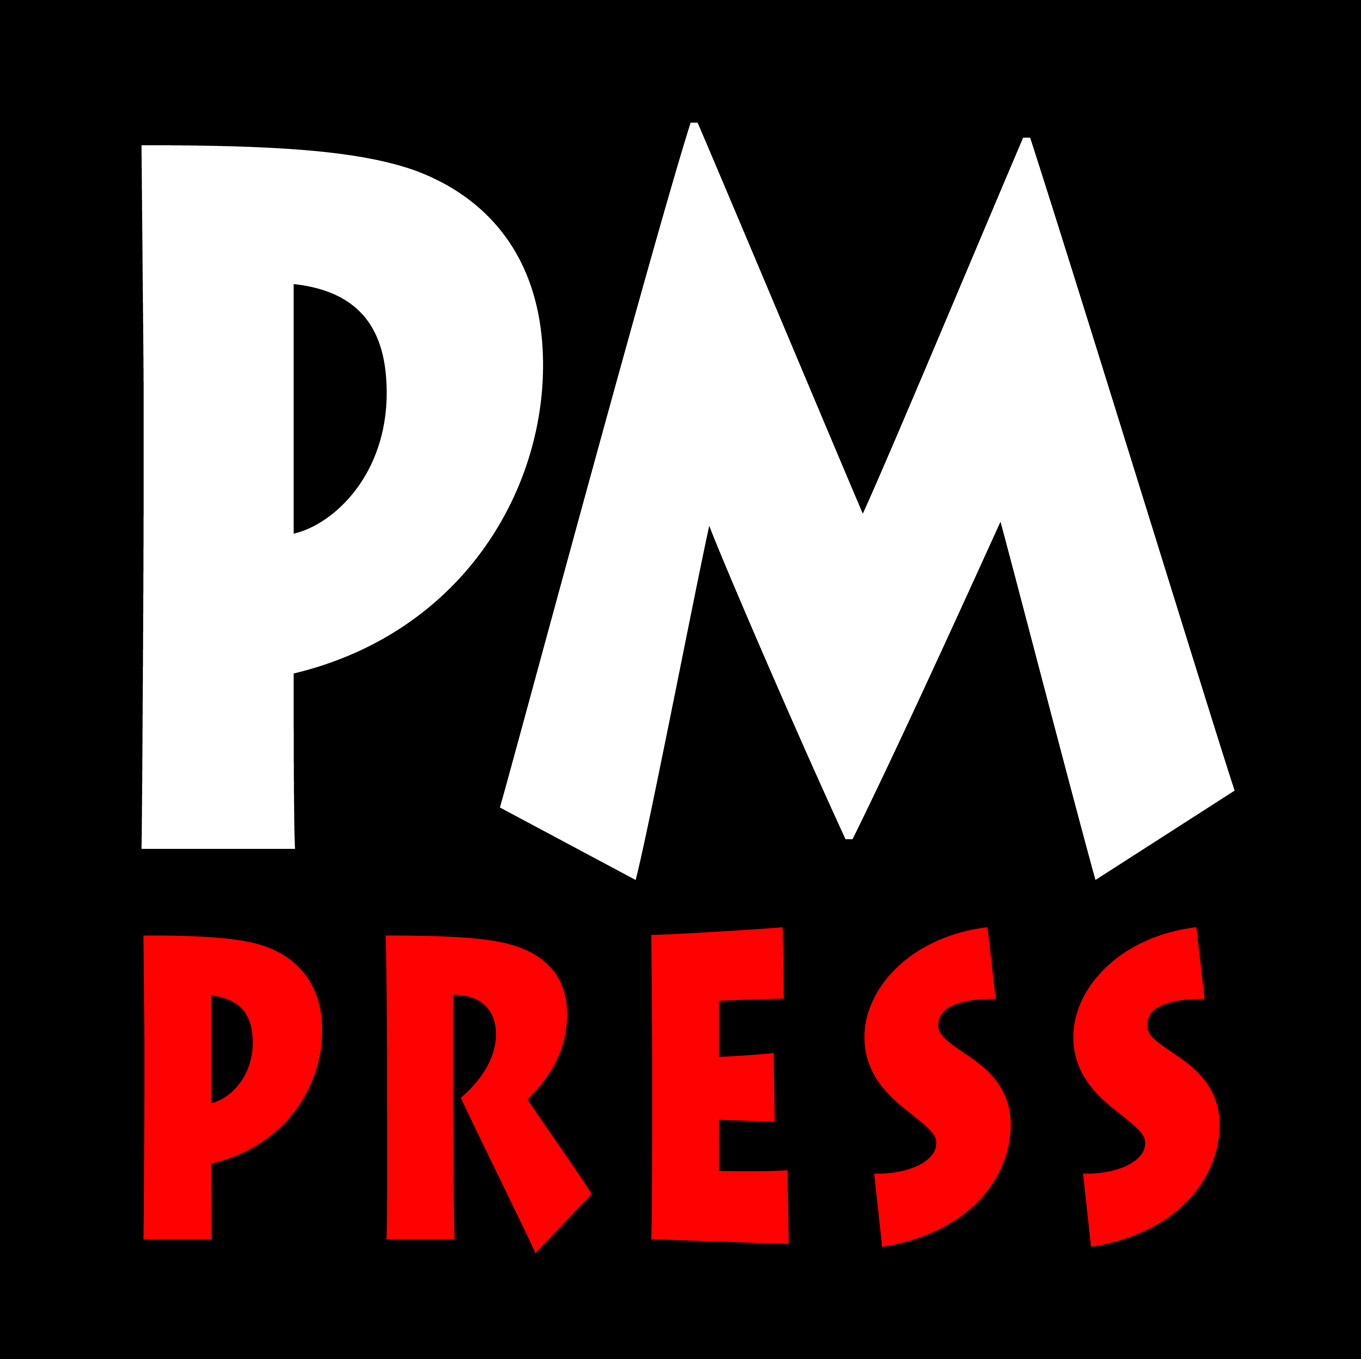 PM Press